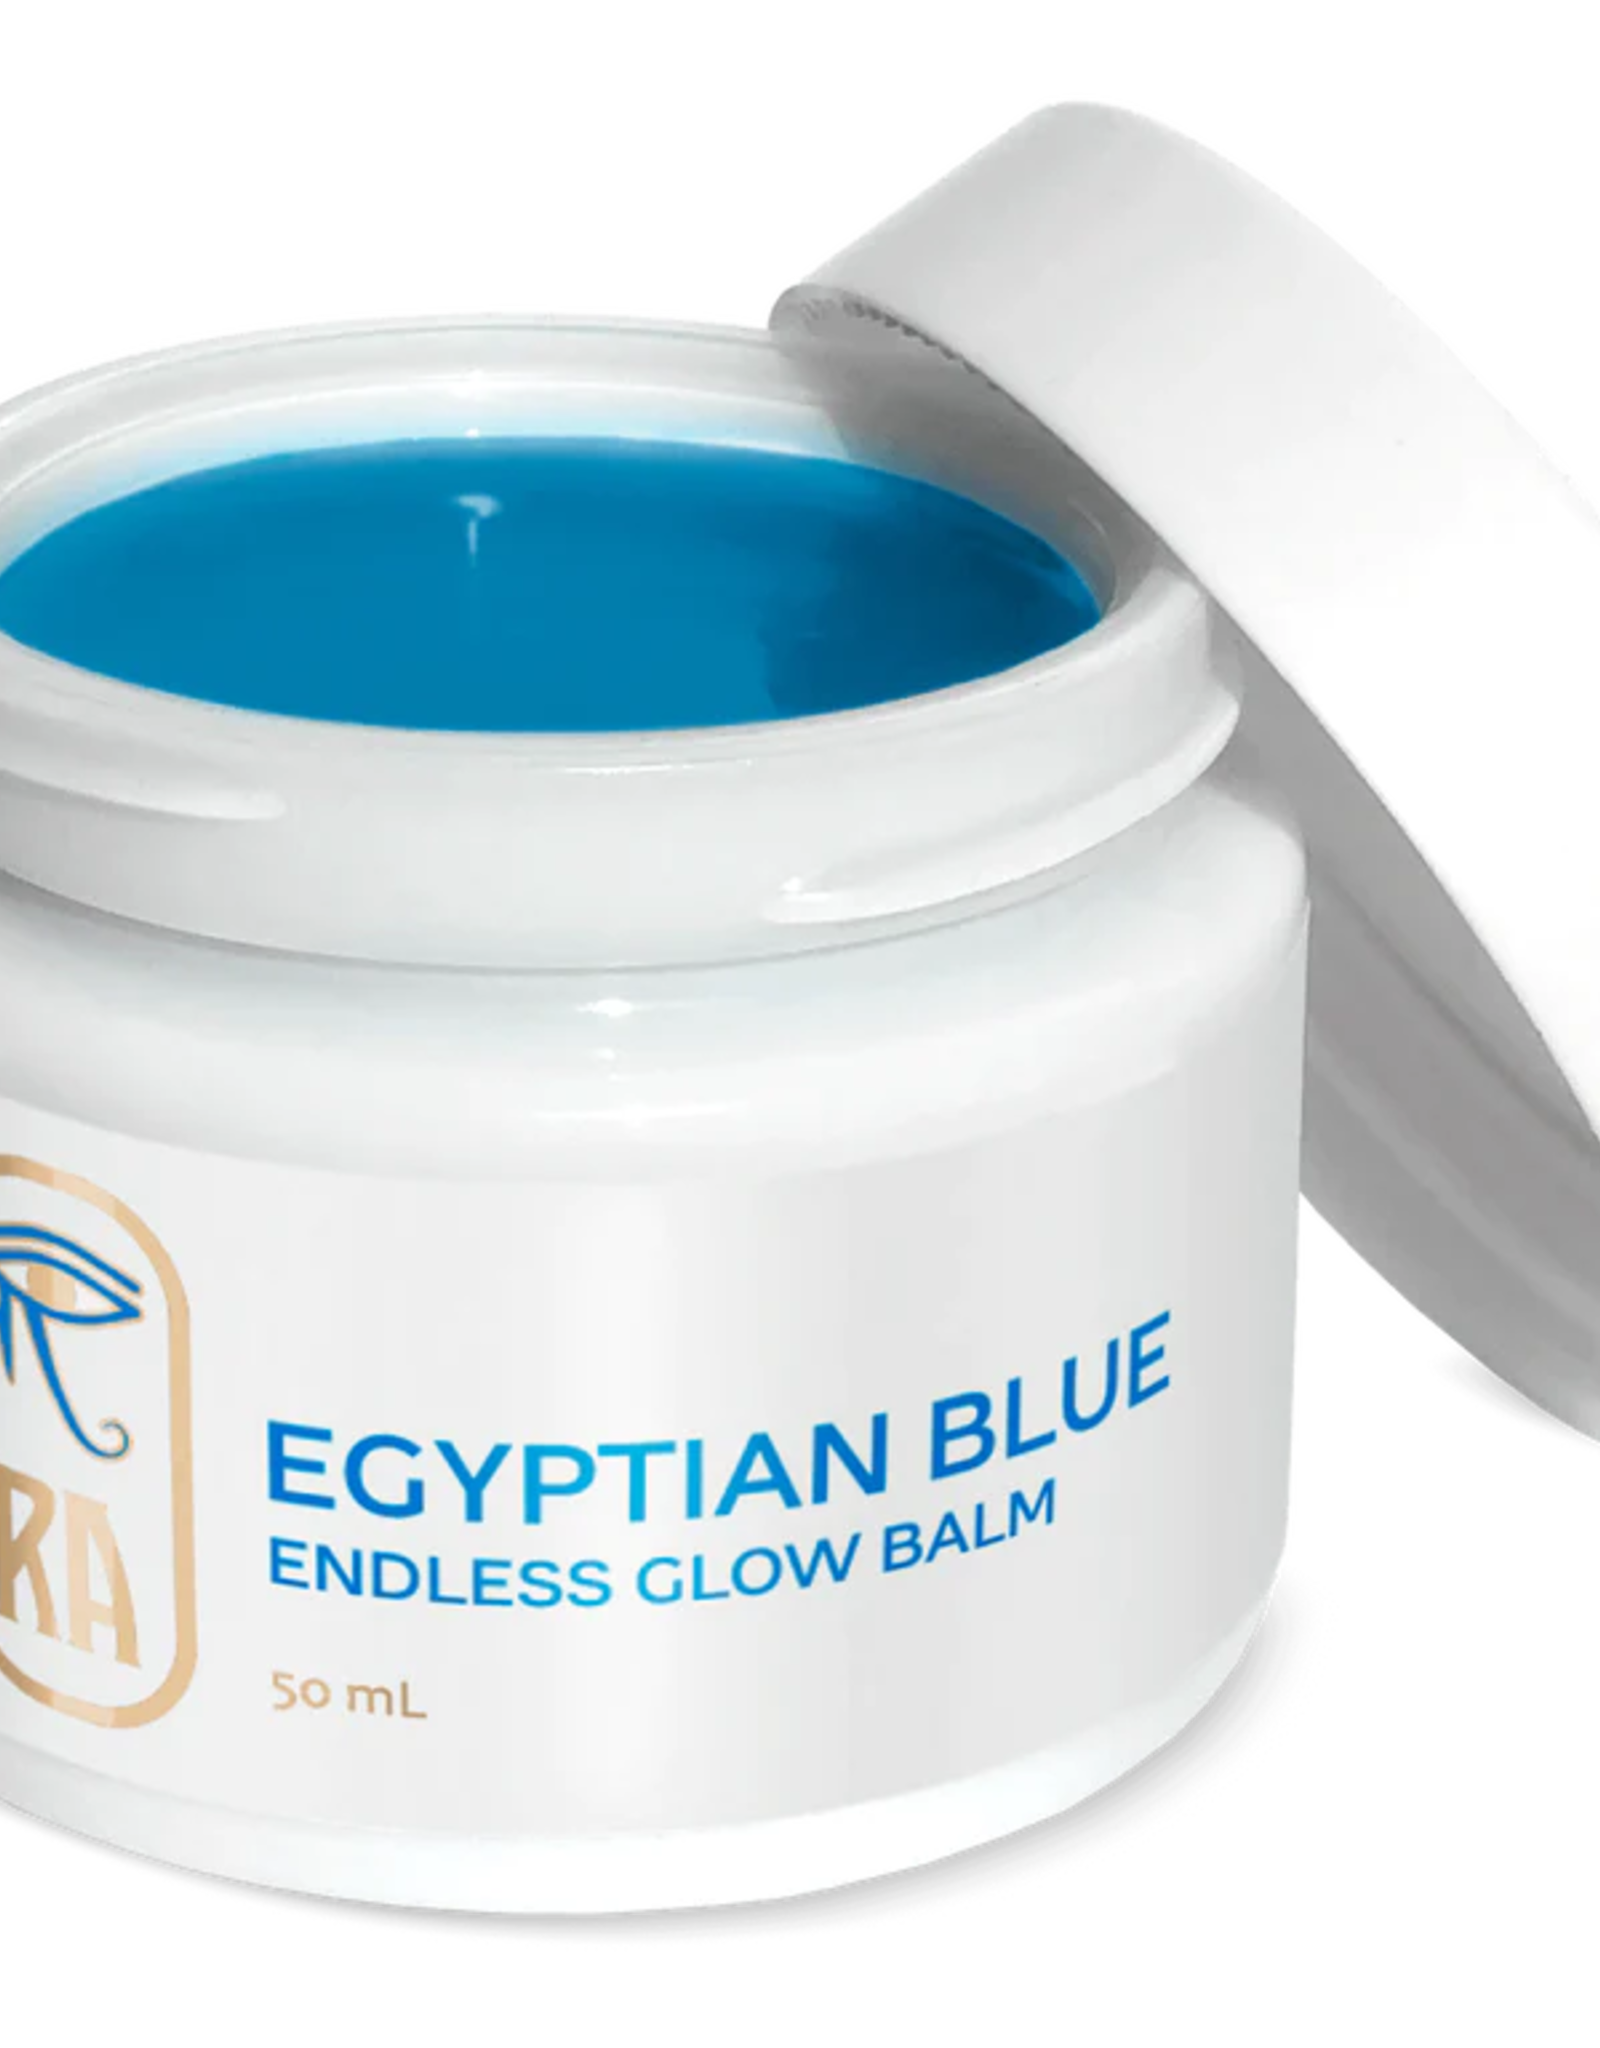 Ra Egyptian Egyptian Blue Endless Glow Balm